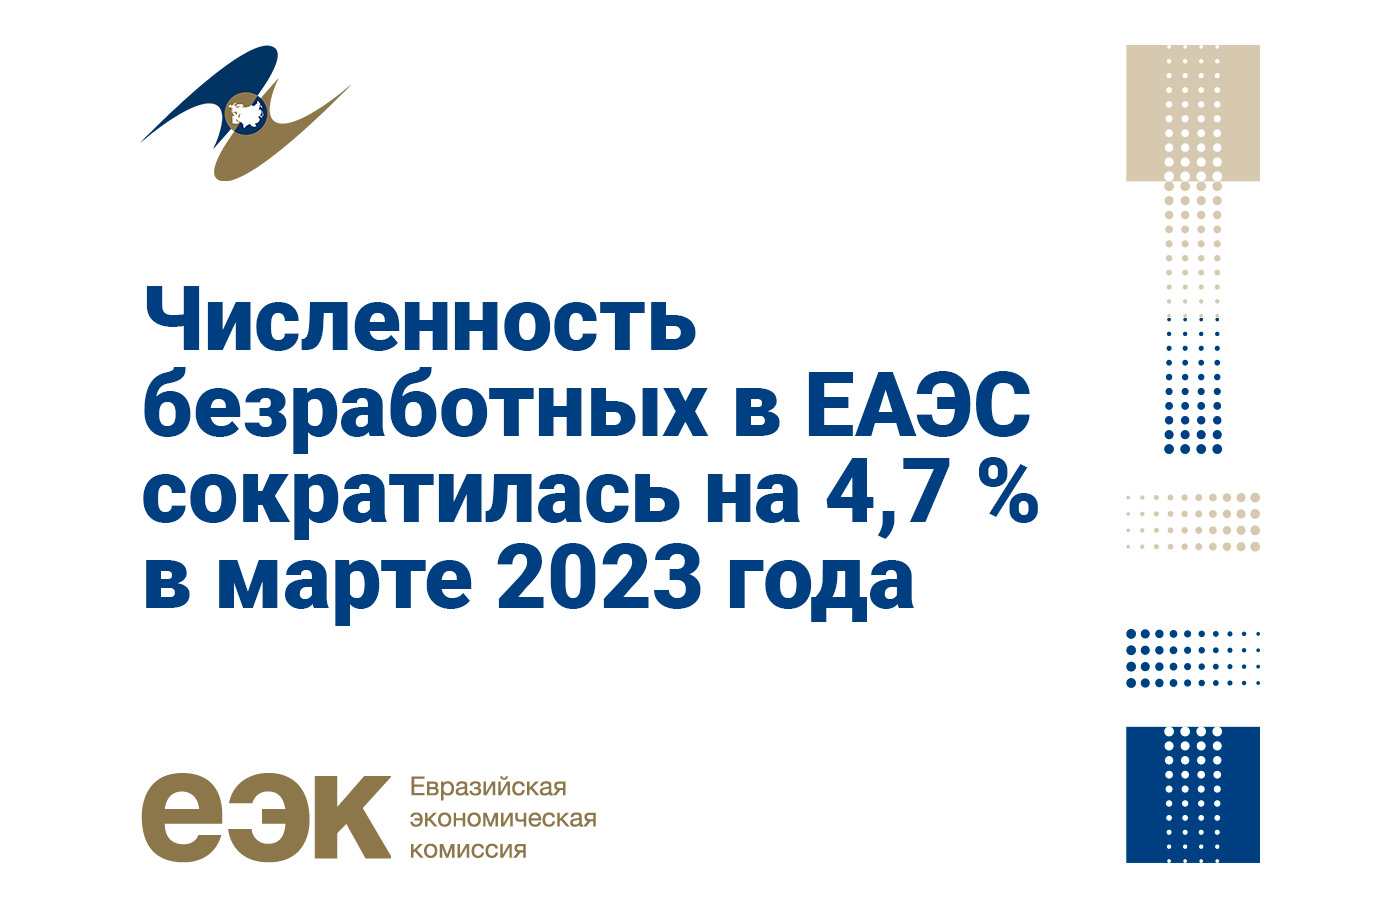 Численность безработных в ЕАЭС сократилась на 4,7 % в марте 2023 года